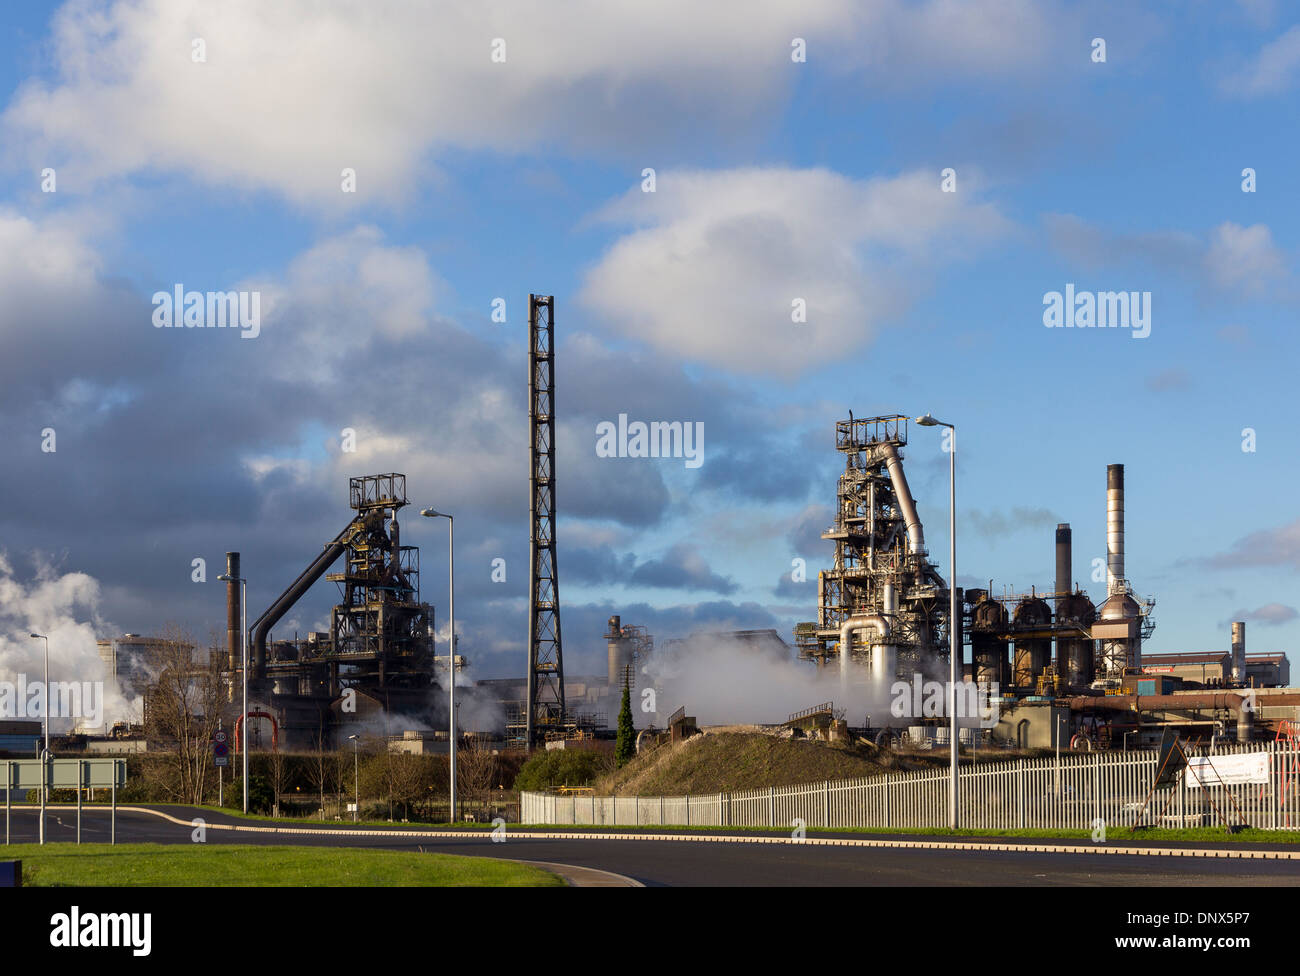 Port Talbot, Pays de Galles, Royaume-Uni - 20 novembre 2013 : les hauts fourneaux de l'aciérie Port Talbot, West Glamorgan, Pays de Galles Banque D'Images